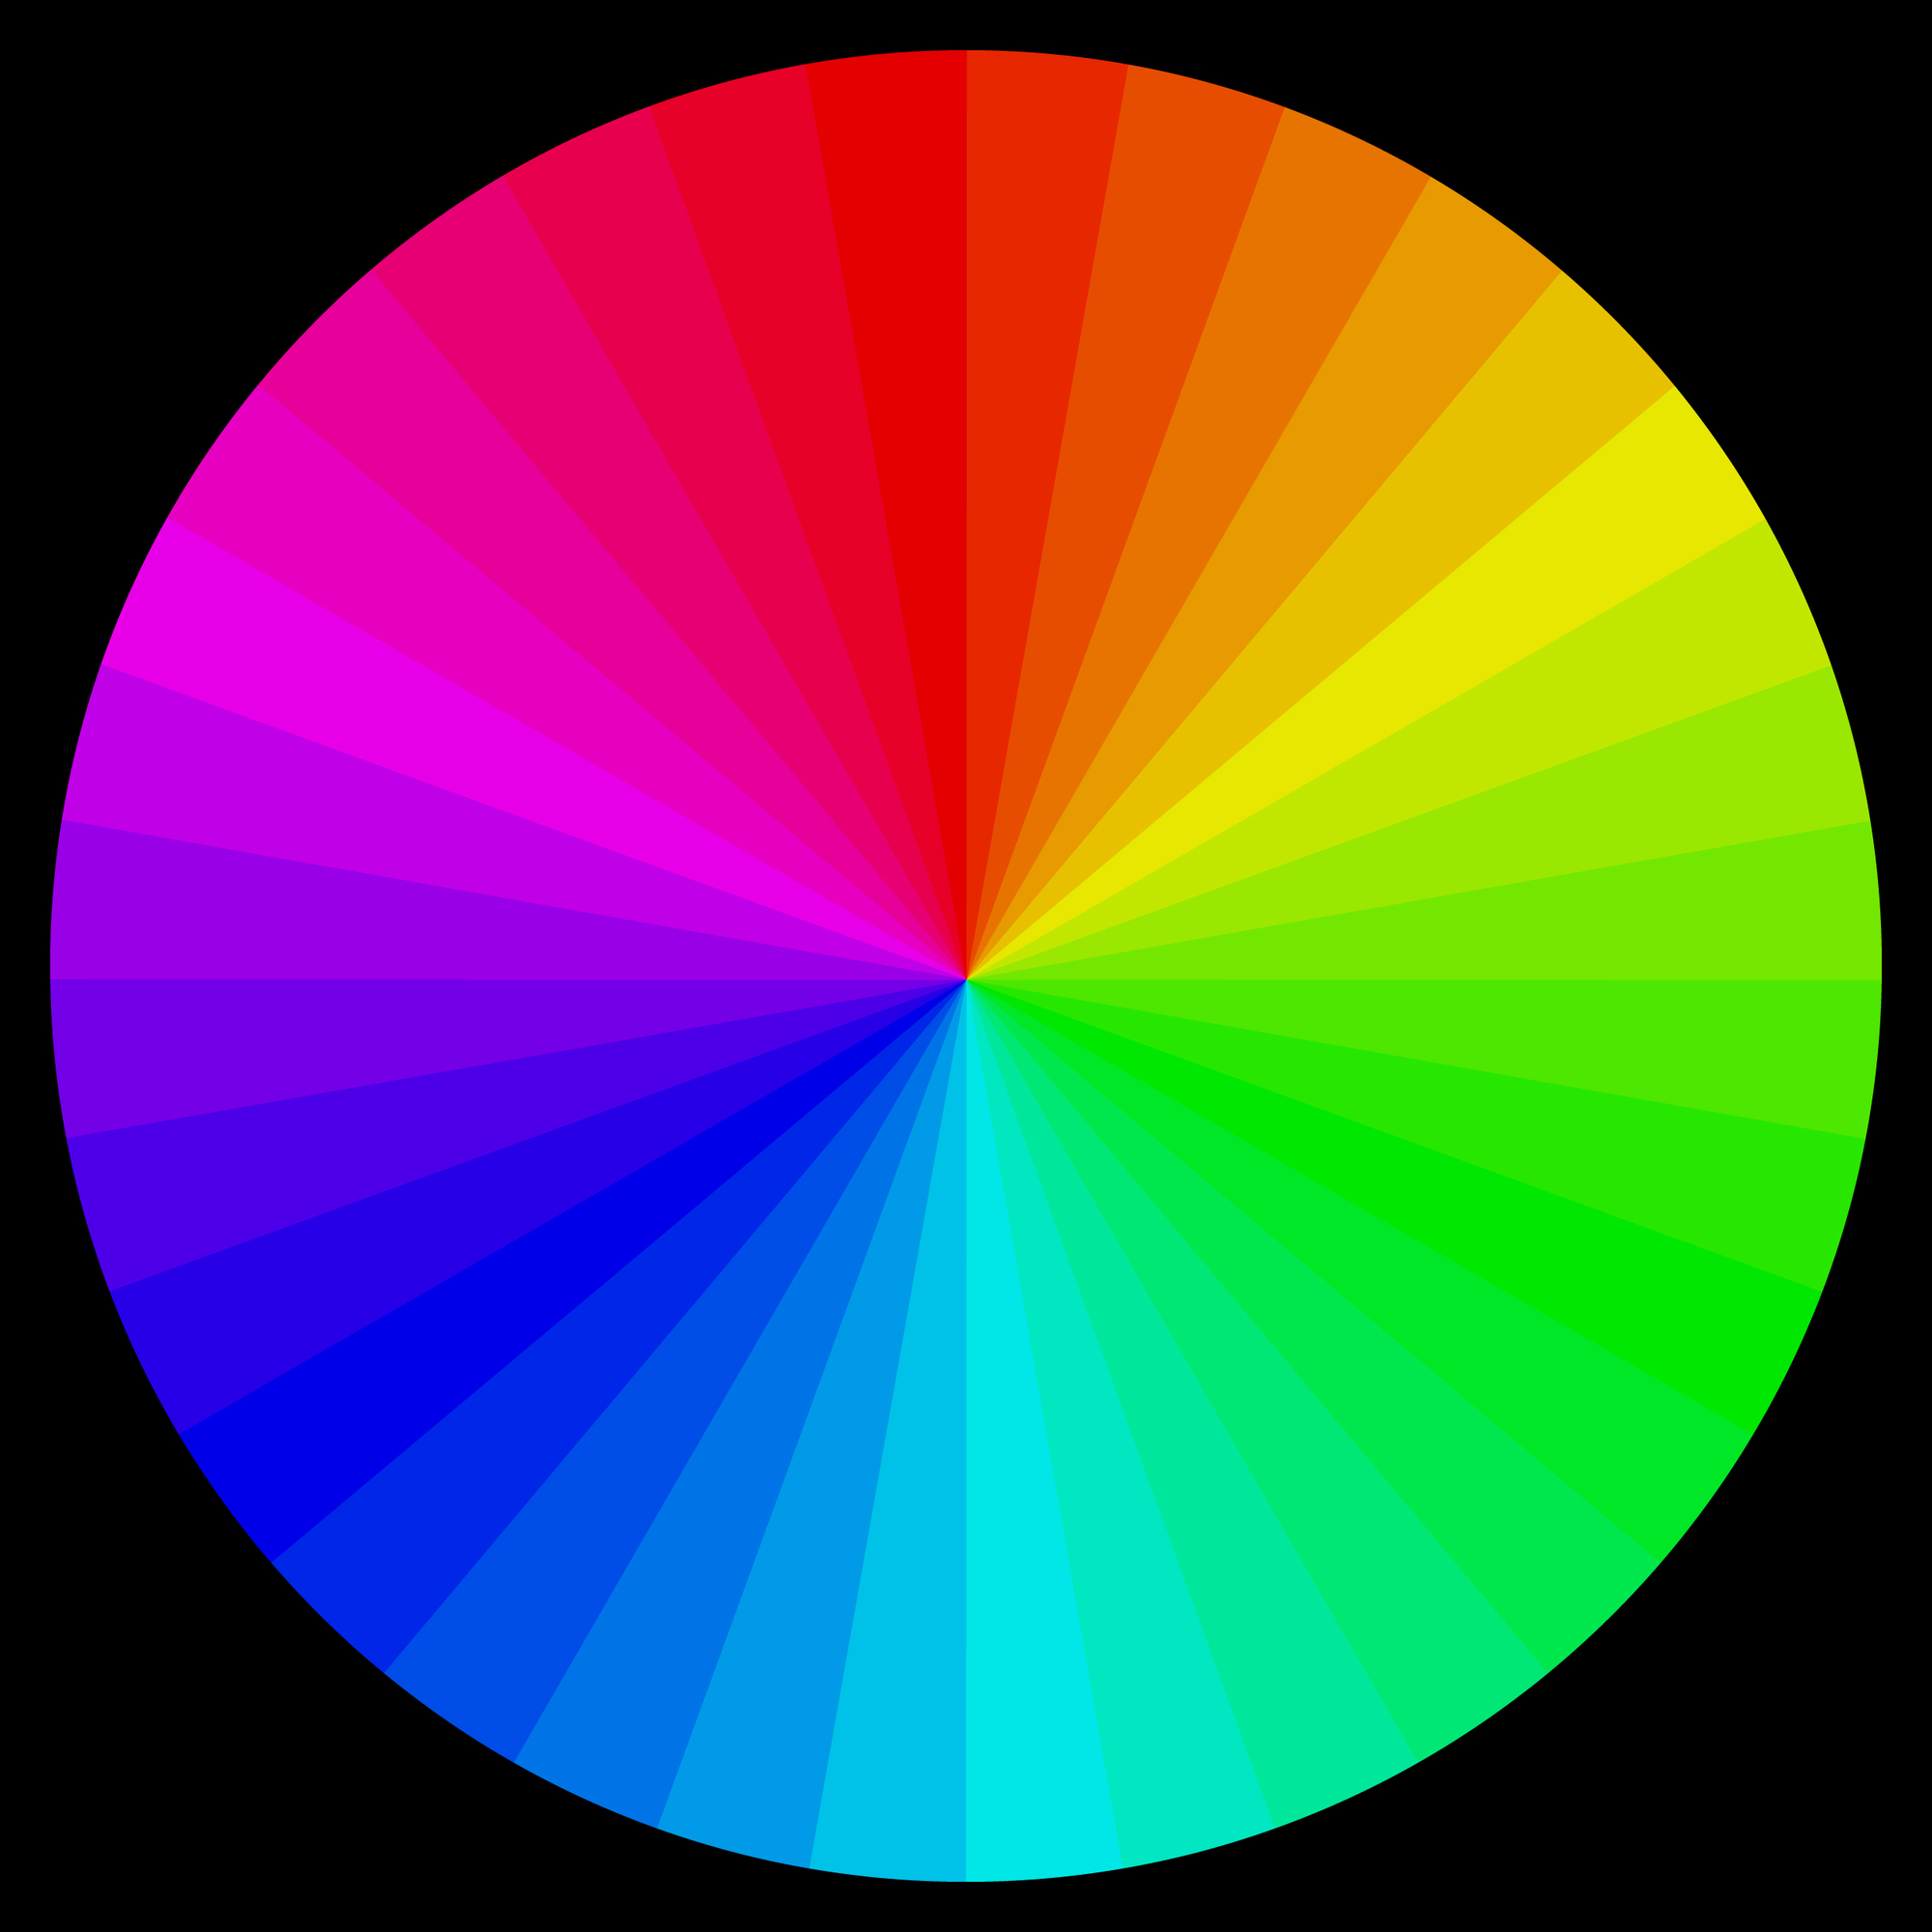 color wheel on black background